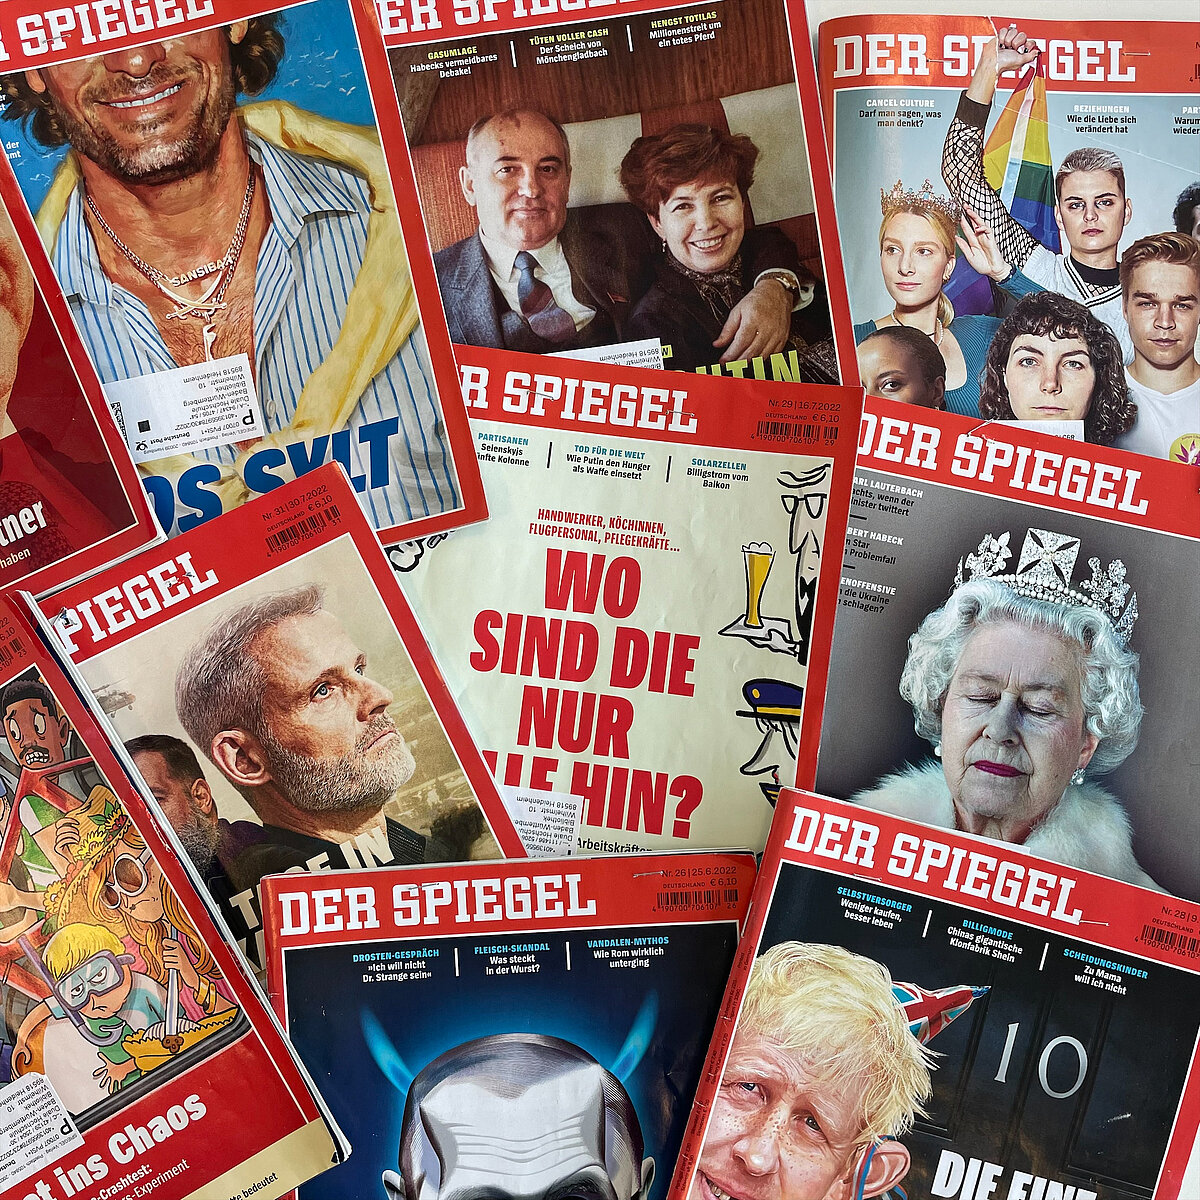 Verschiedene Cover der Zeitschrift "Der Spiegel"